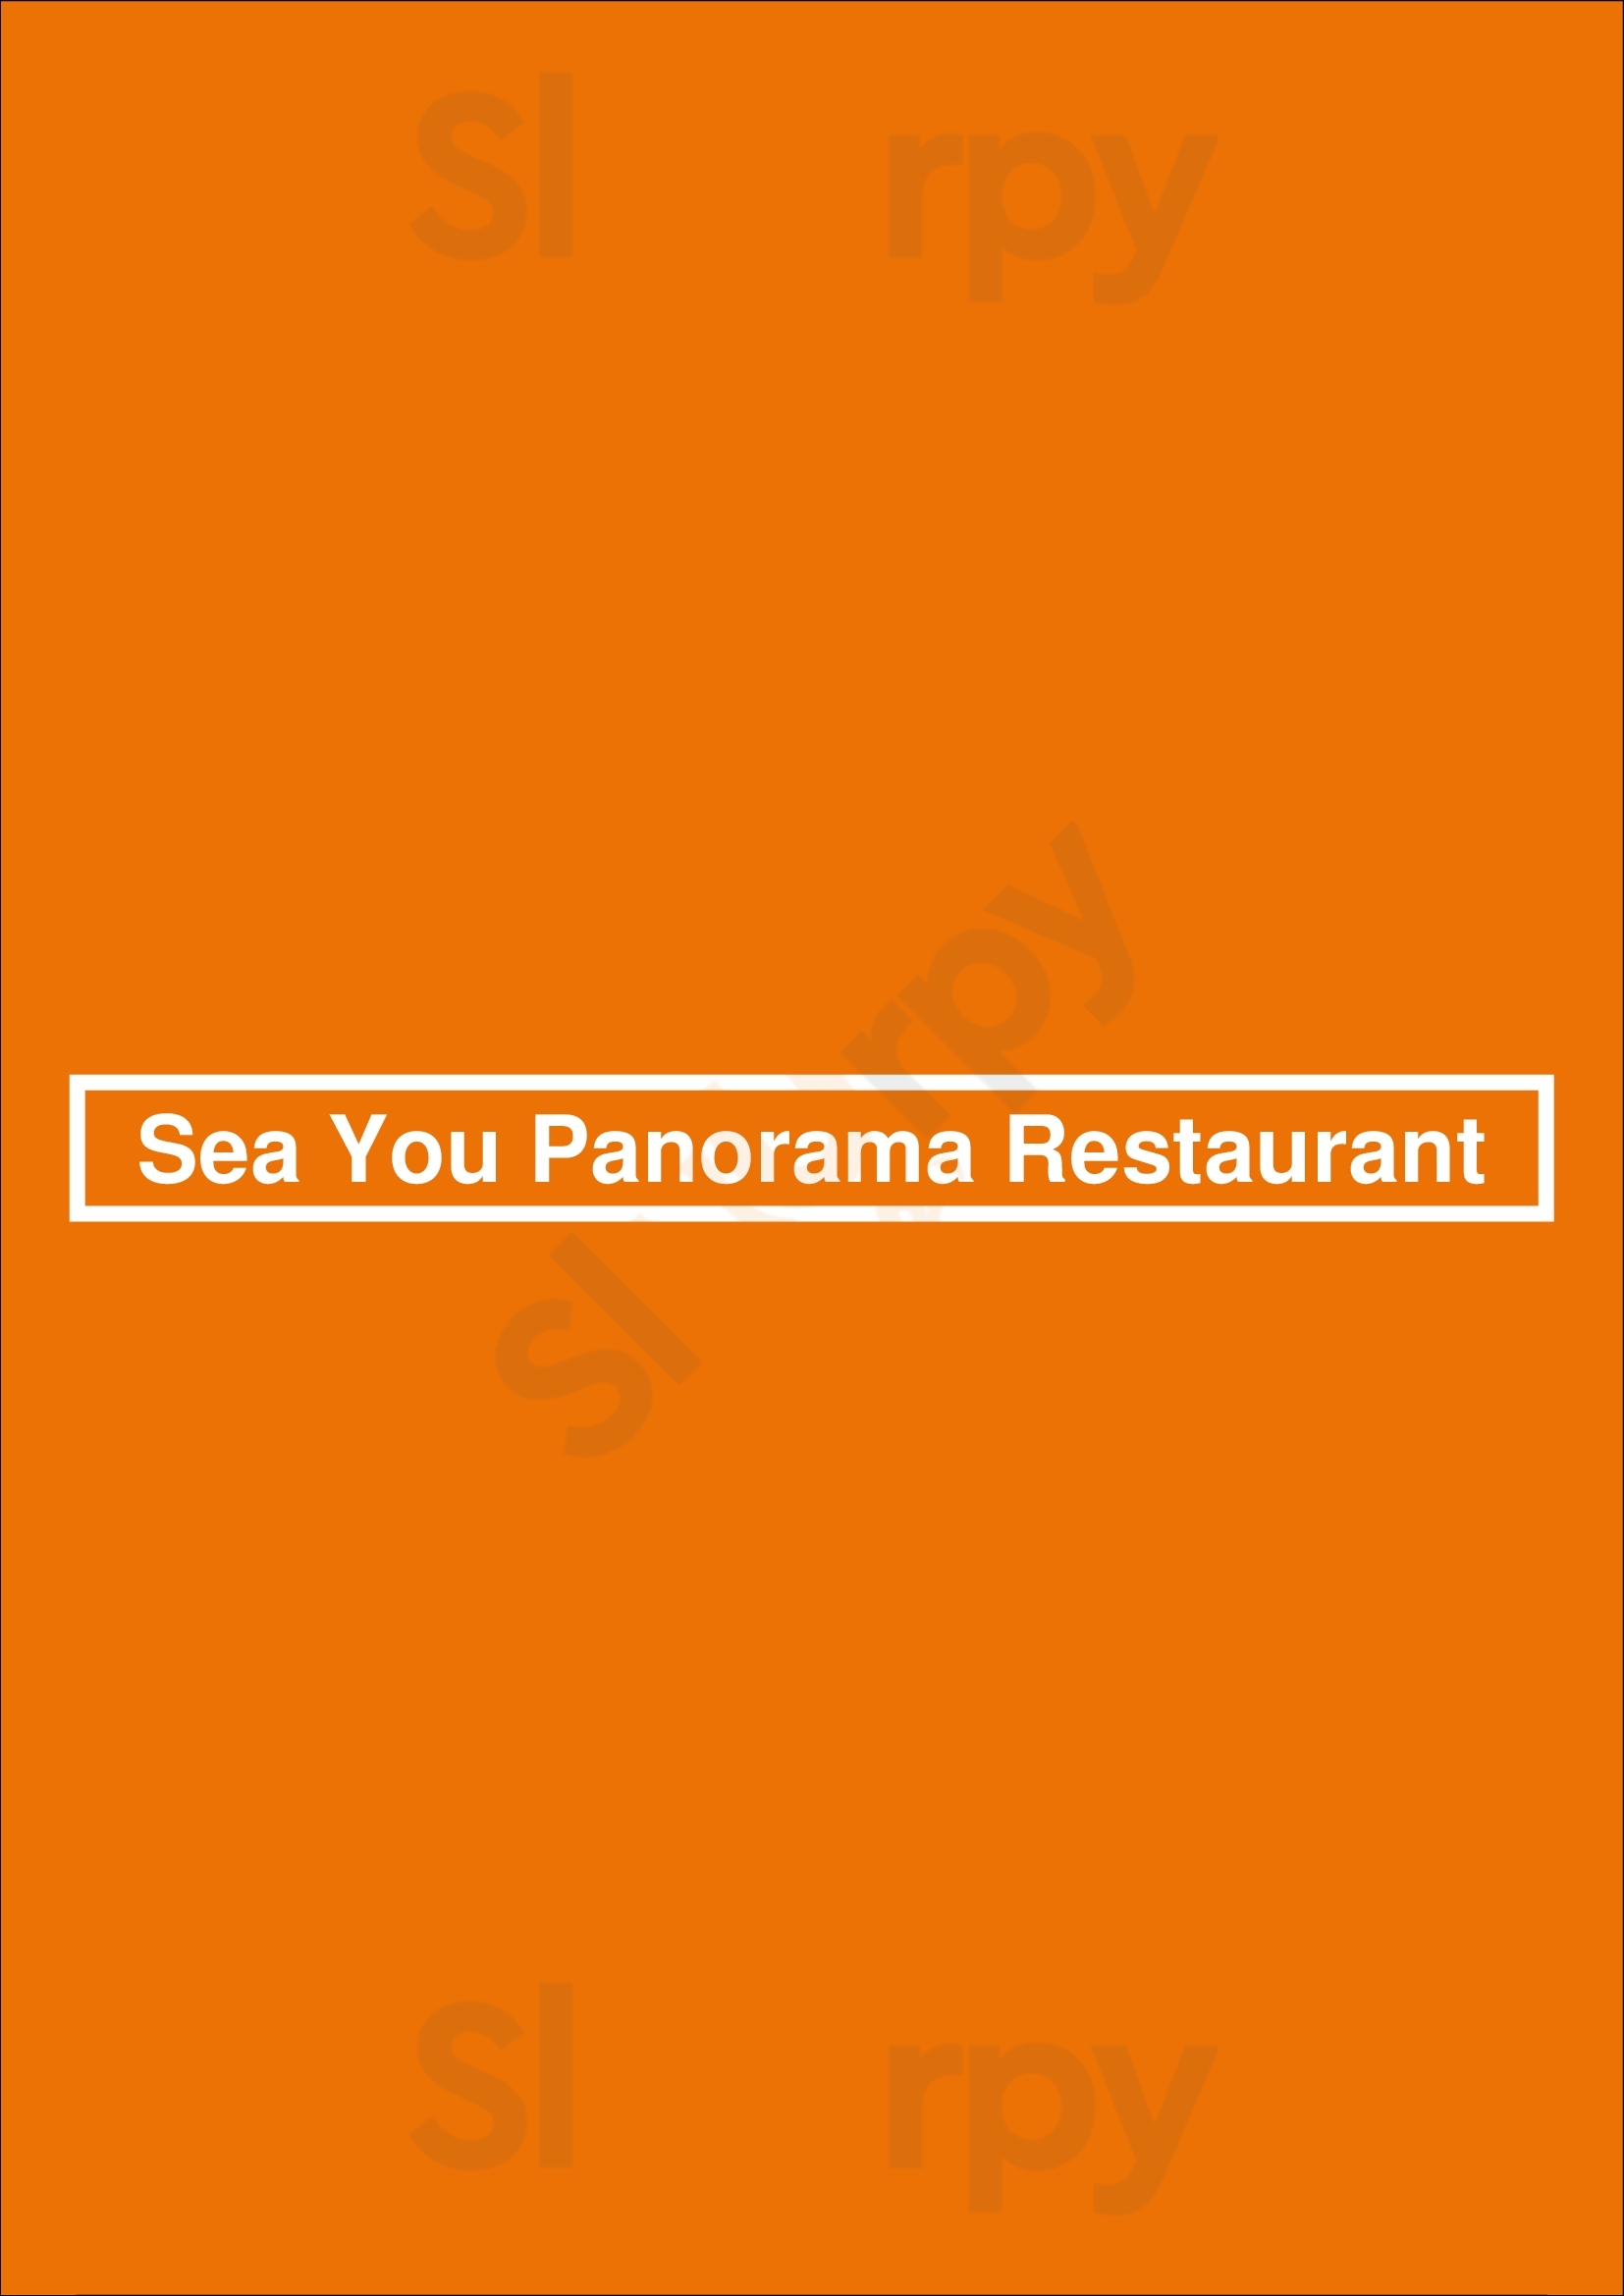 Sea You Panorama Restaurant Velsen Menu - 1